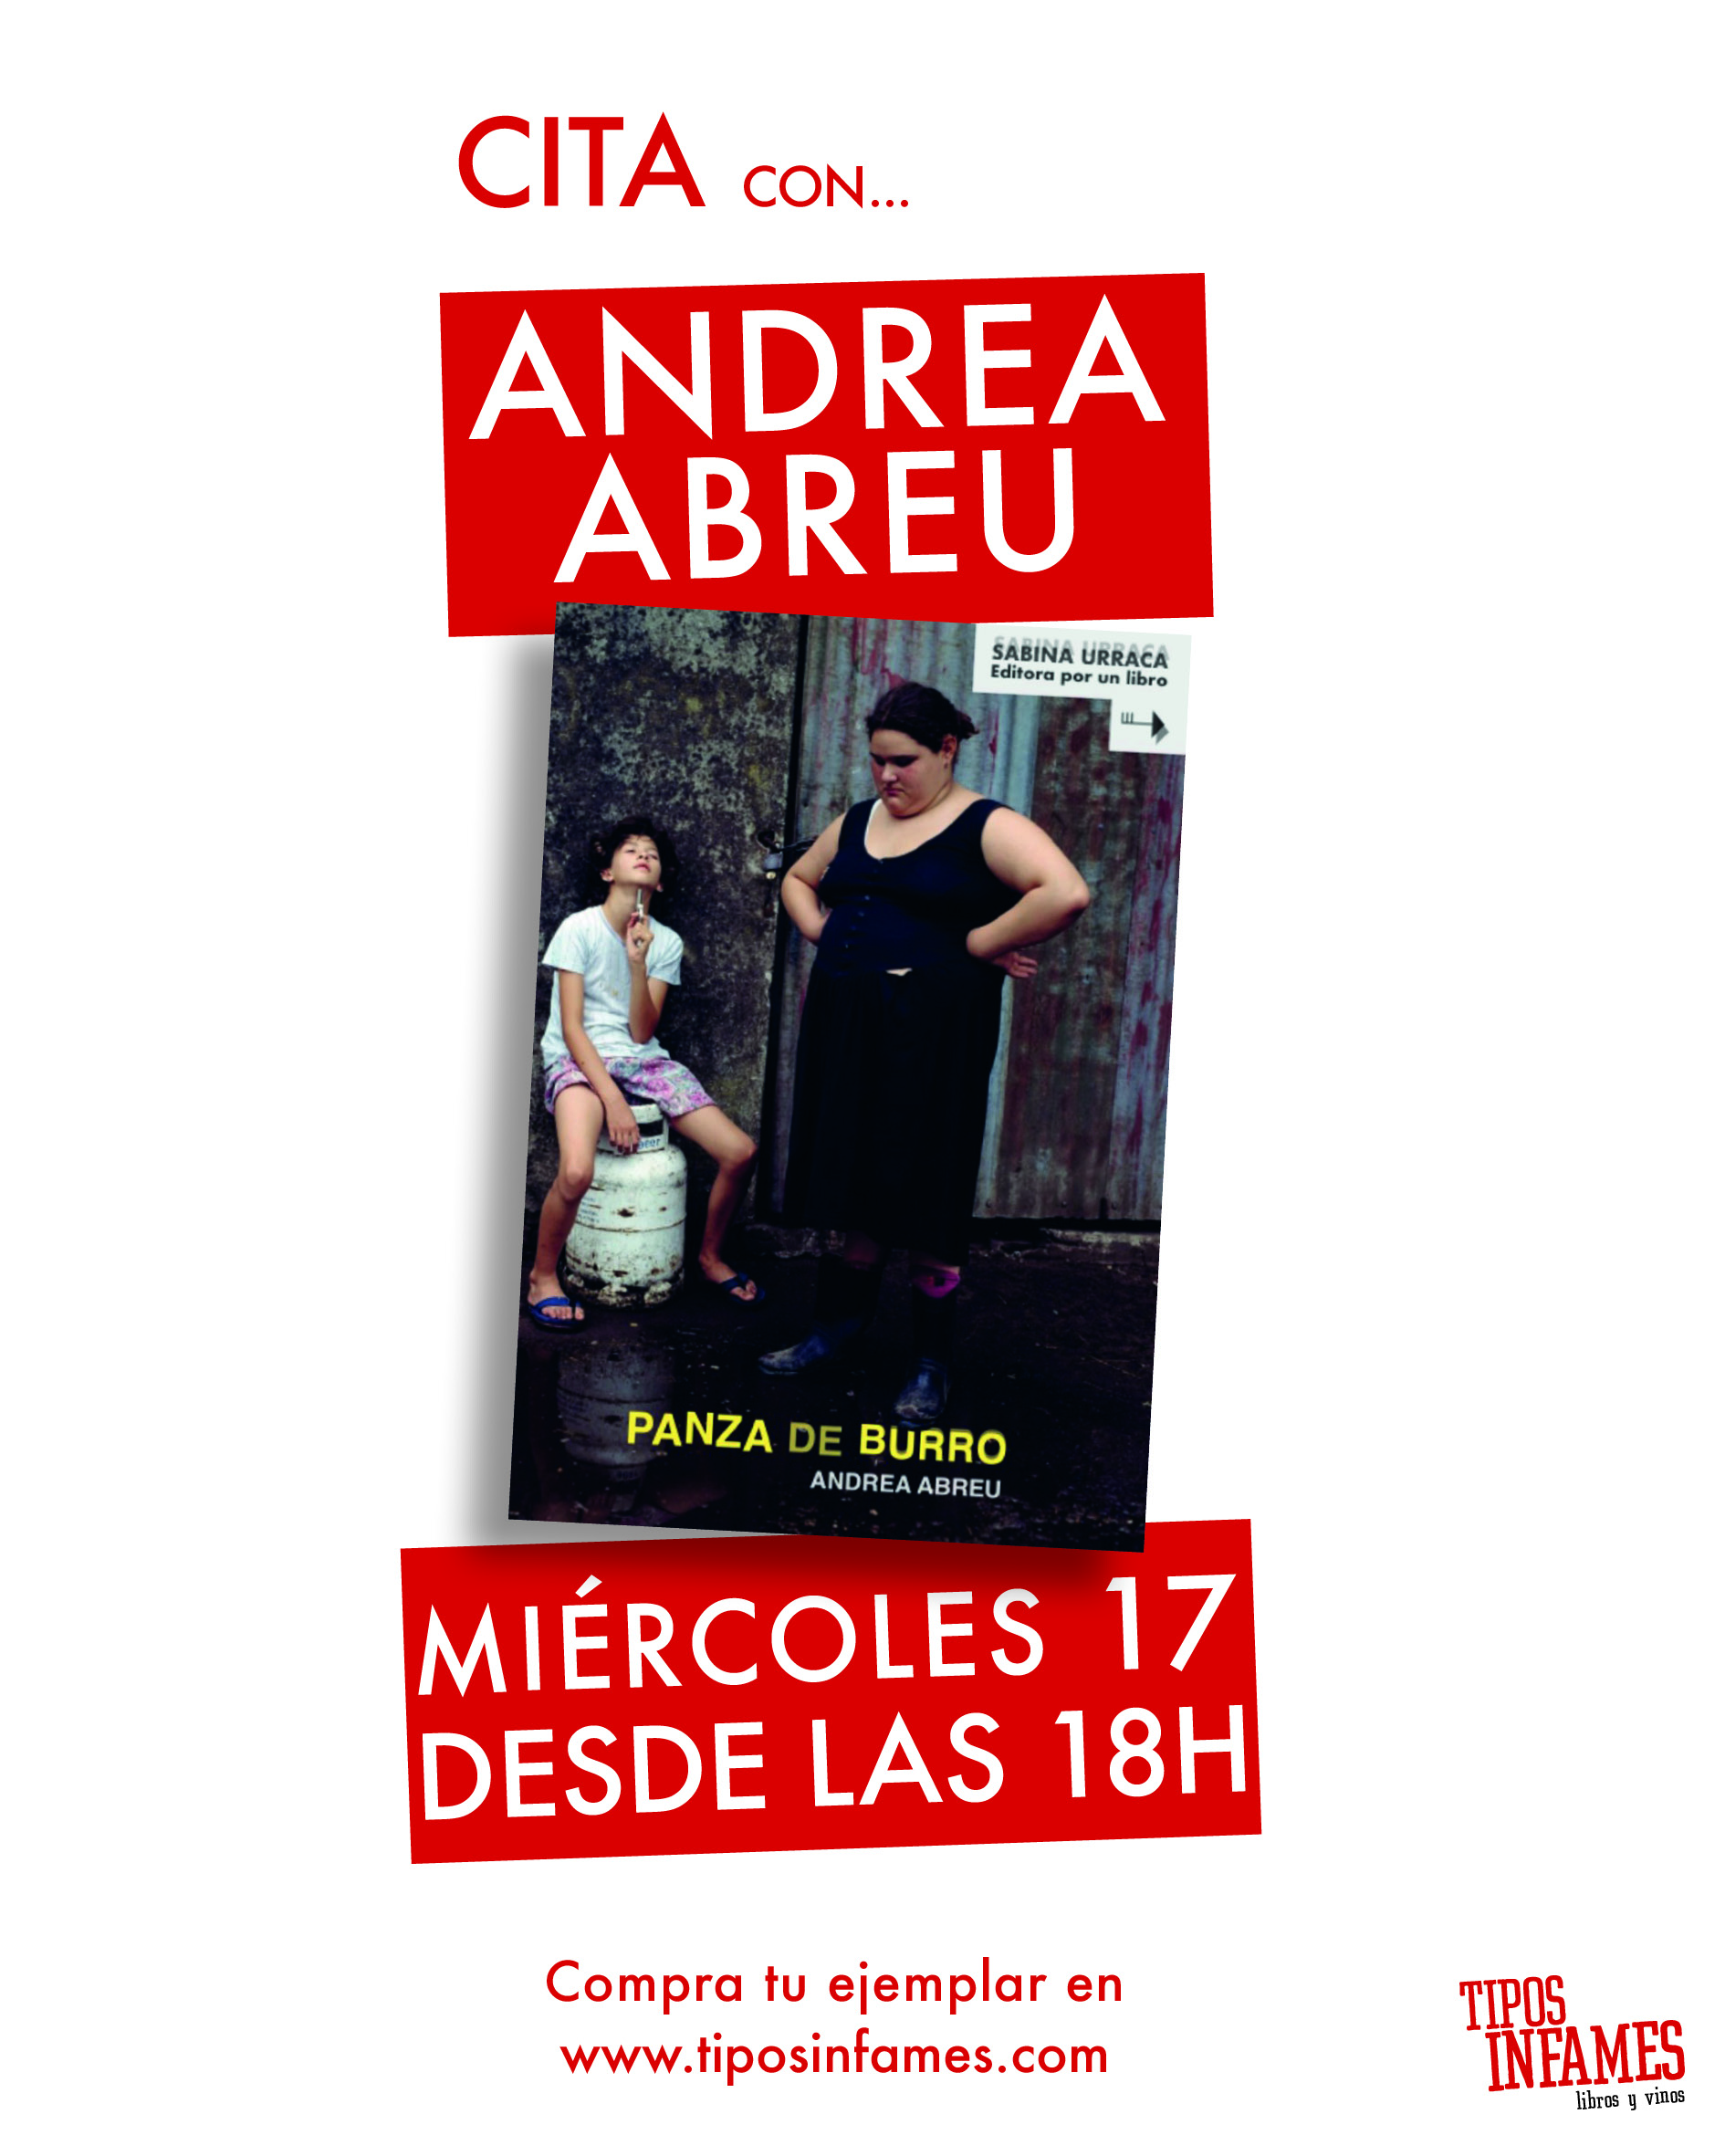 Cita con... Andrea Abreu